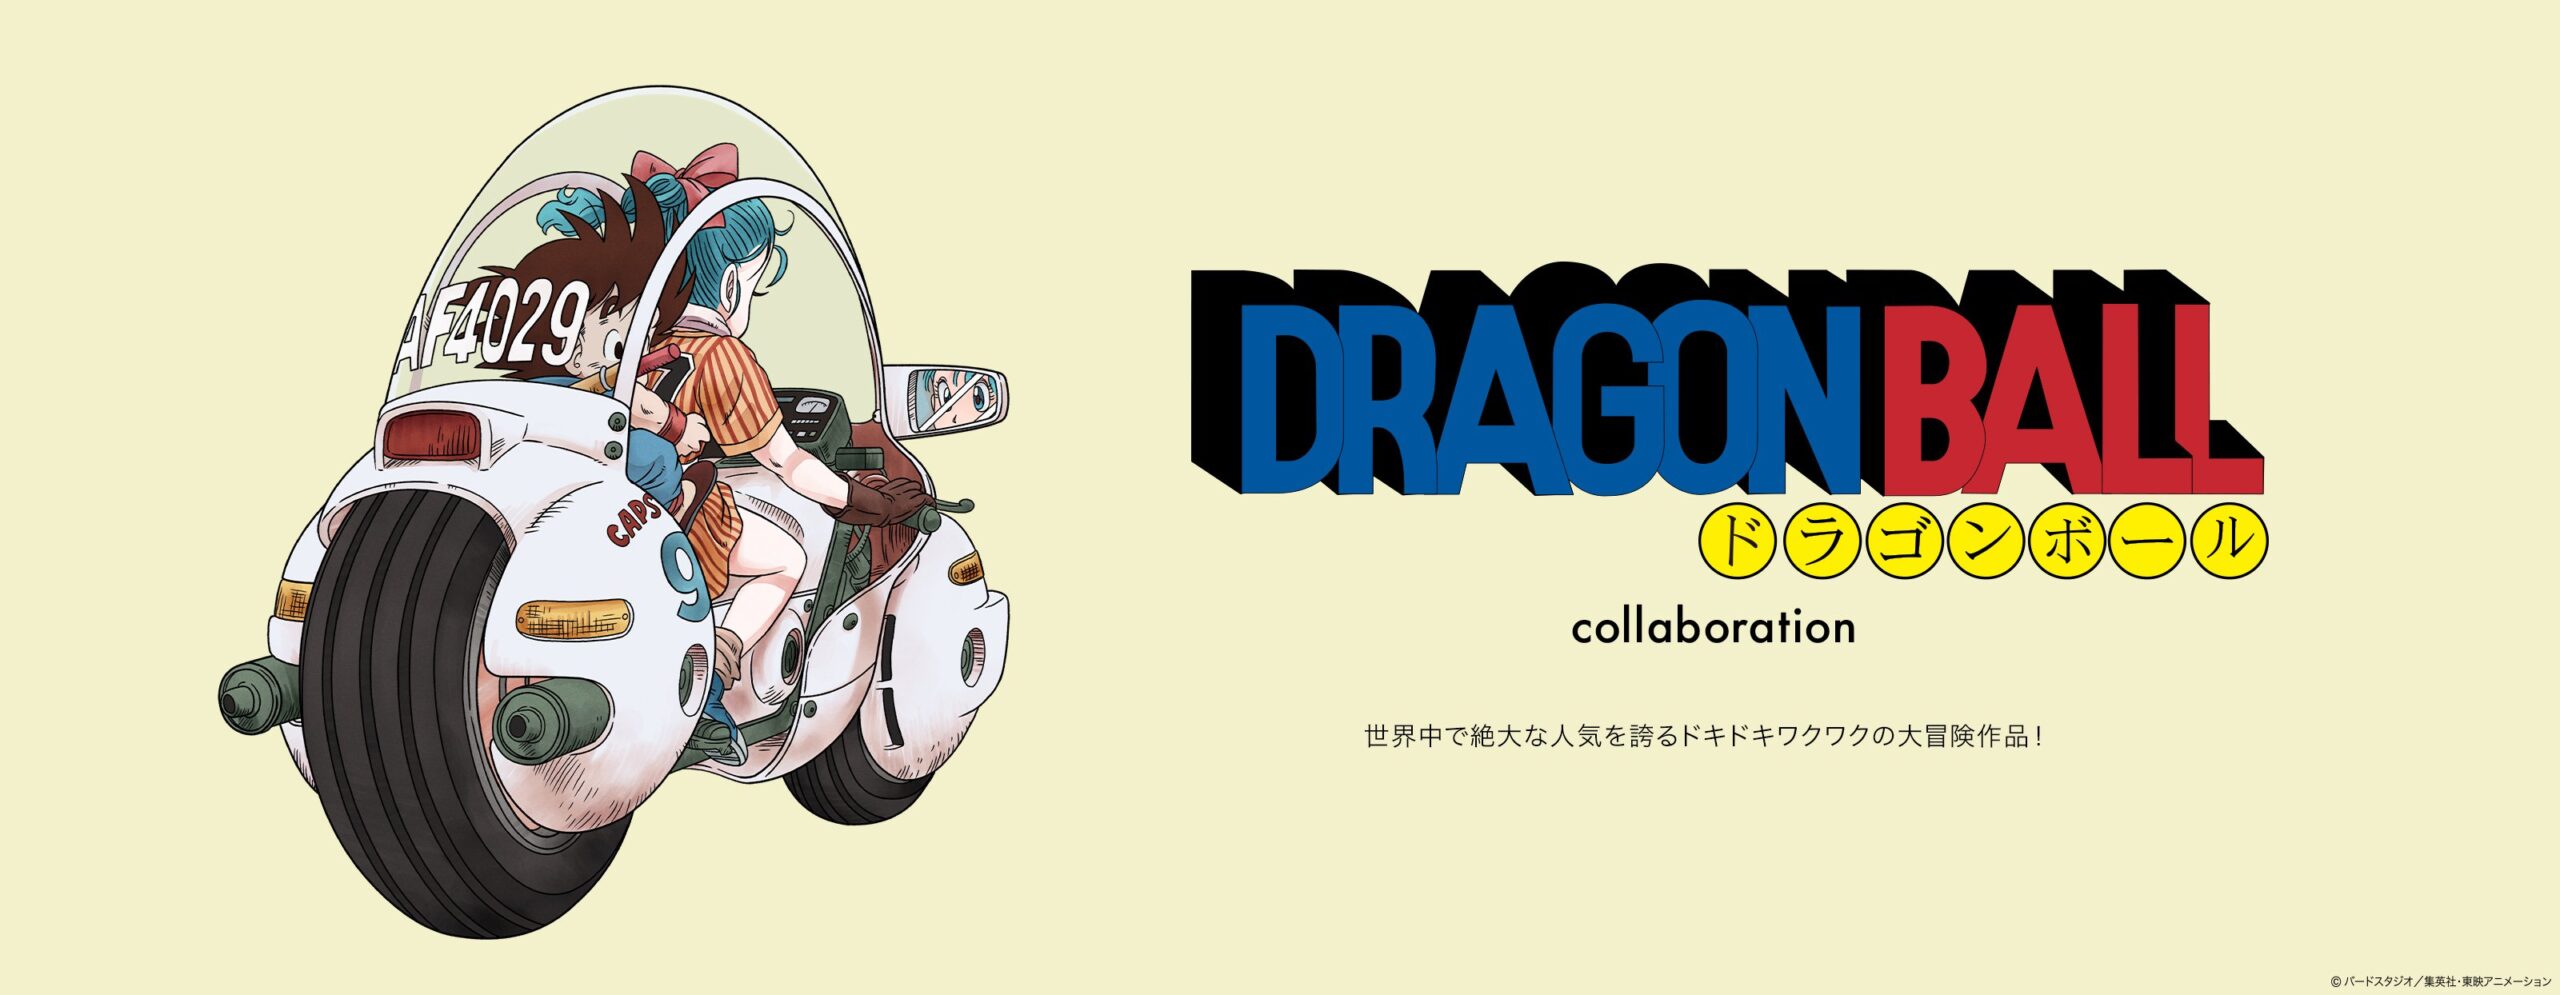 ドラゴンボール × グラニフ 5月2日よりレトロ可愛いコラボアイテム登場!